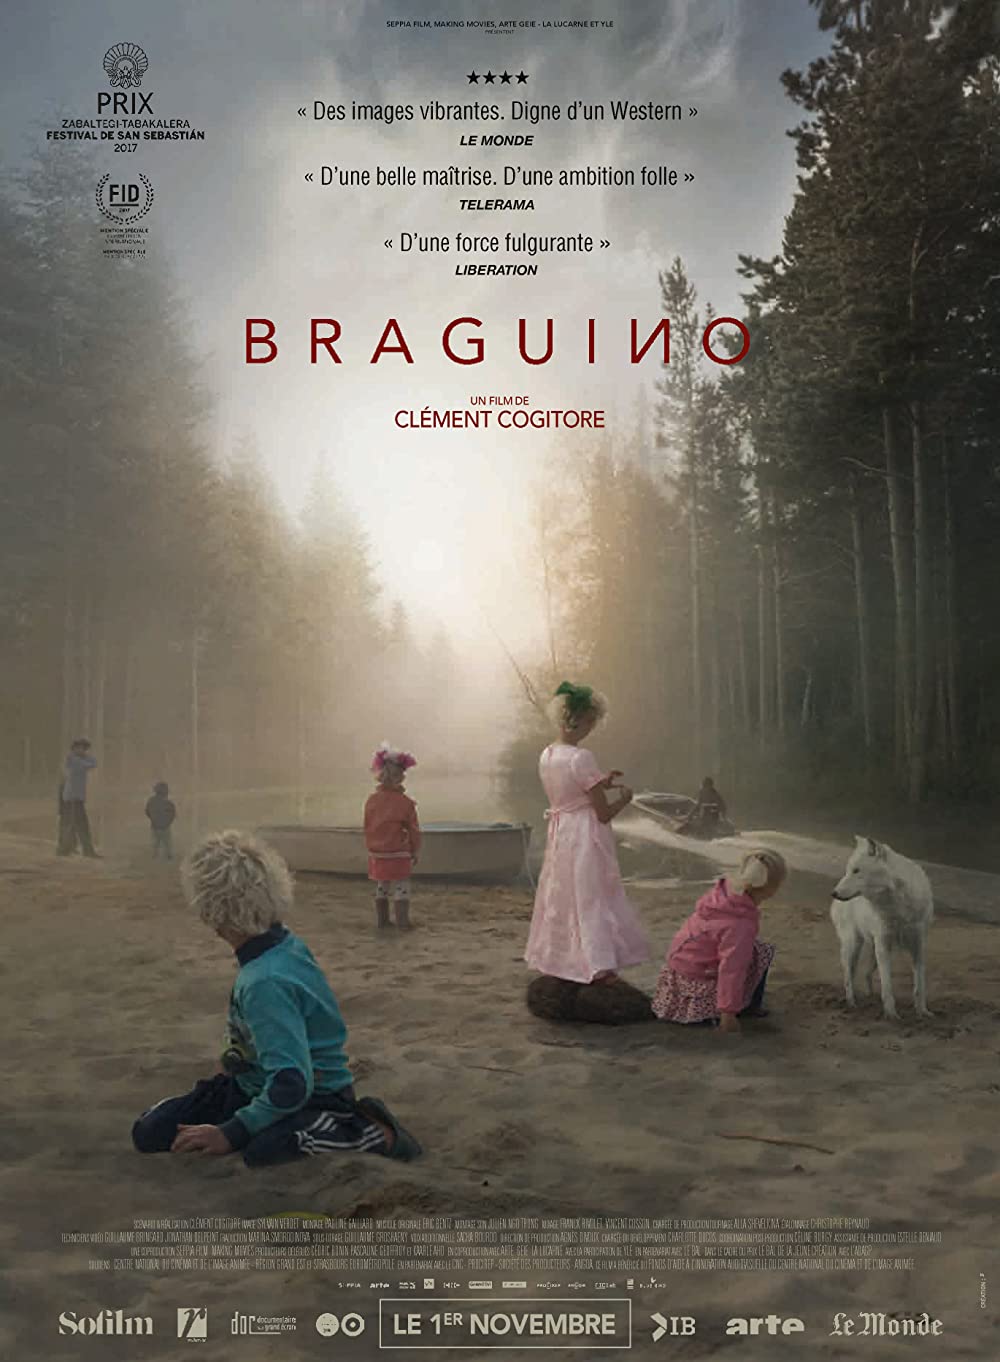 Filmbeschreibung zu Braguino